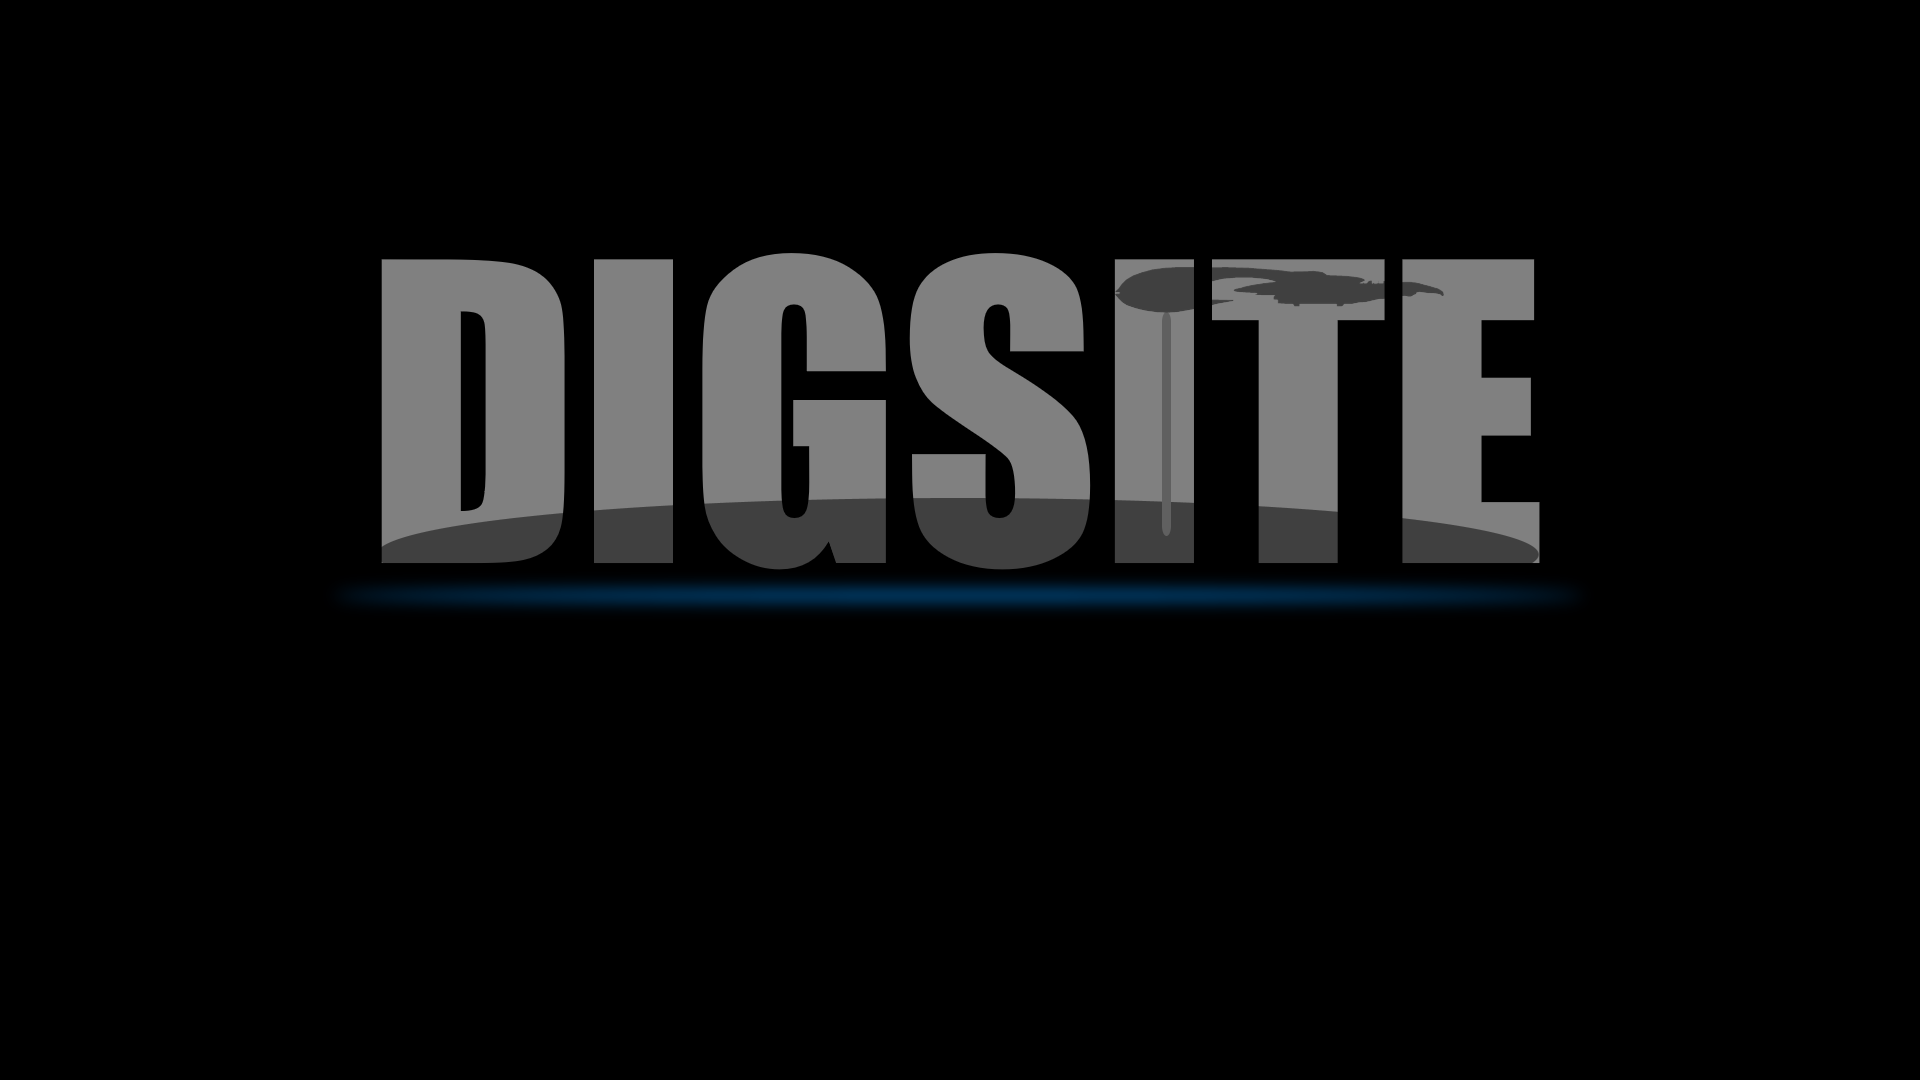 Digsite logo